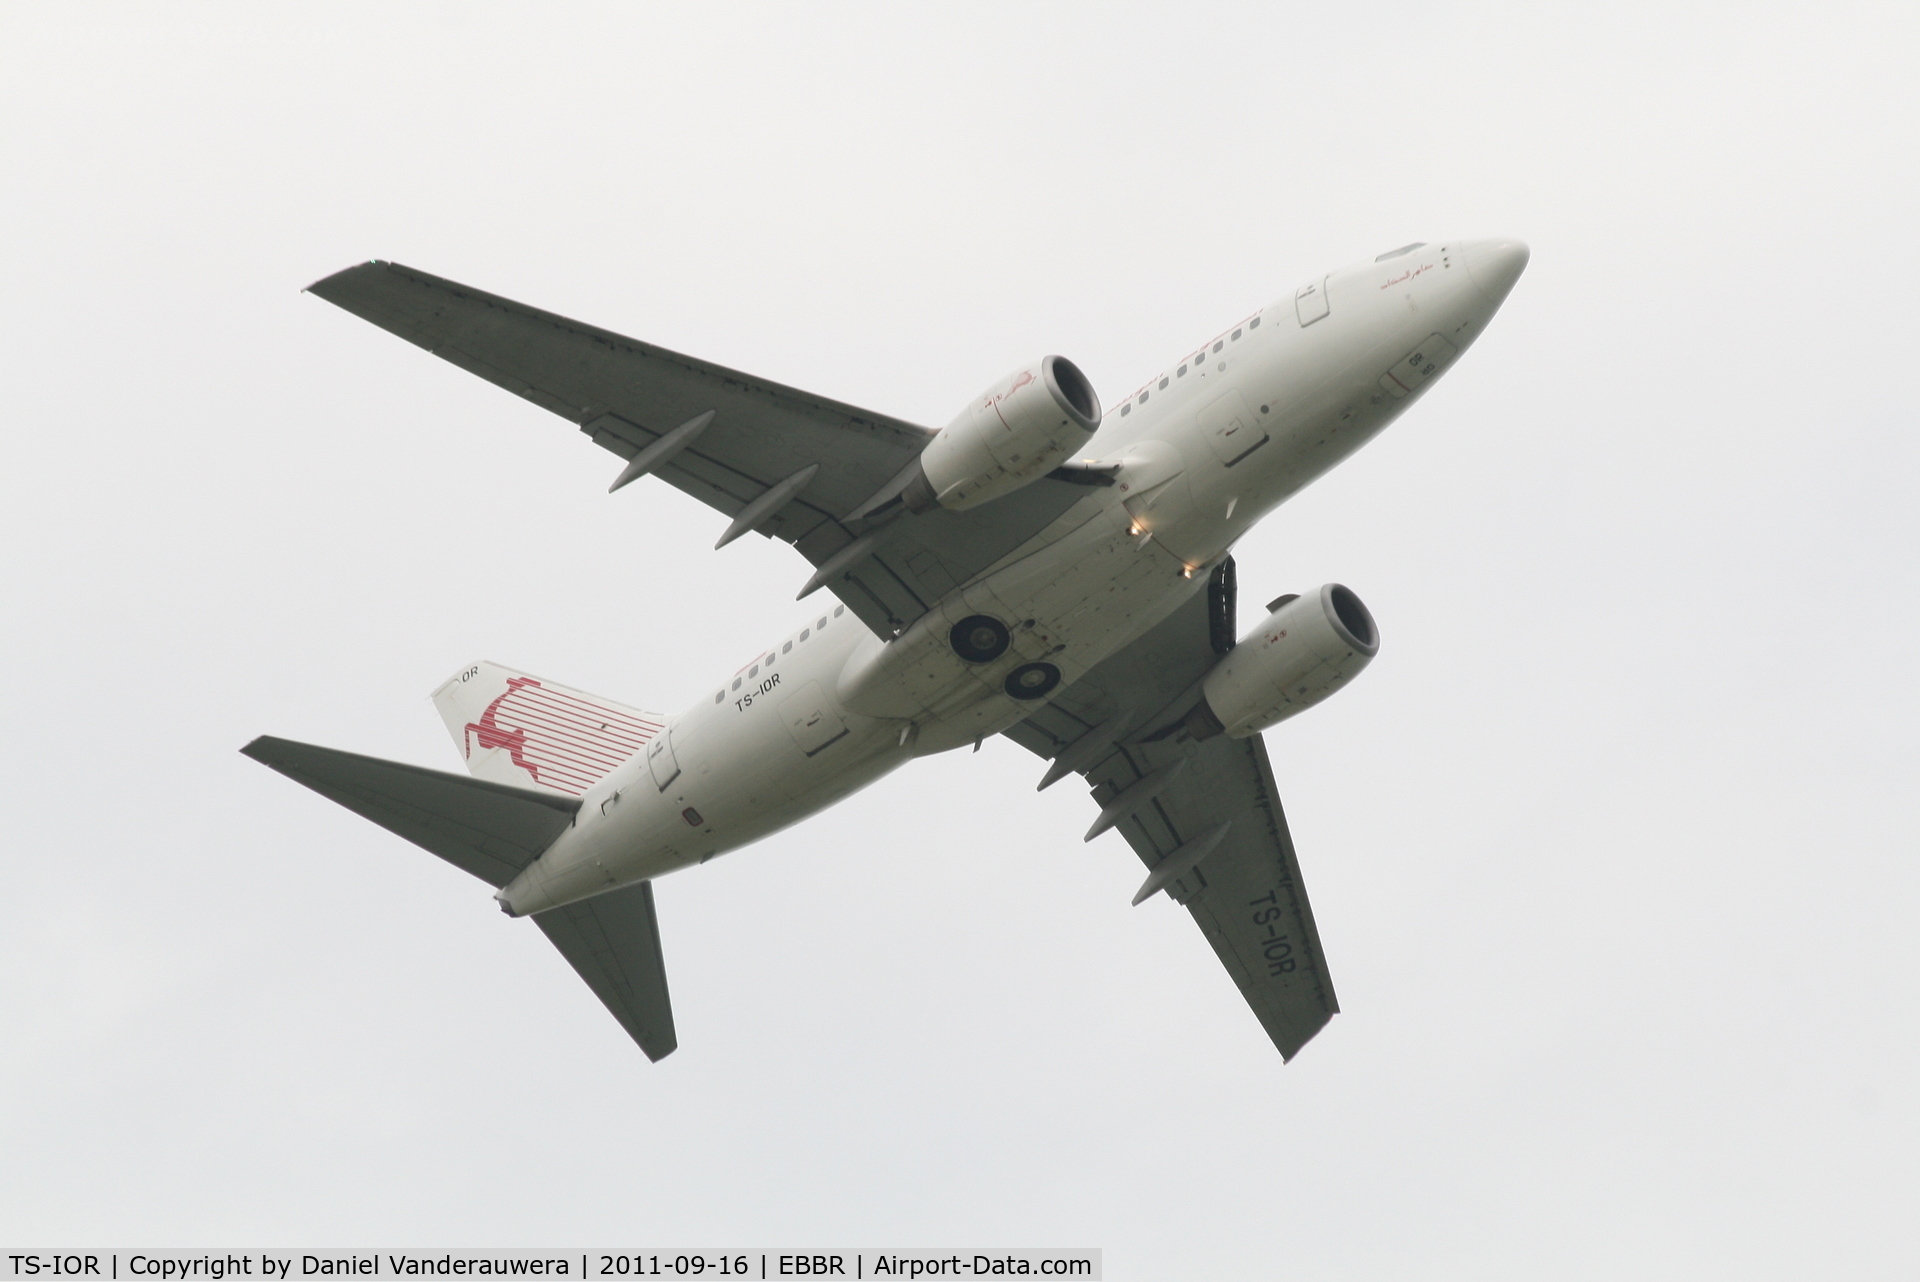 TS-IOR, 2001 Boeing 737-6H3 C/N 29502, Flight TU8431 is climbing from RWY 07R